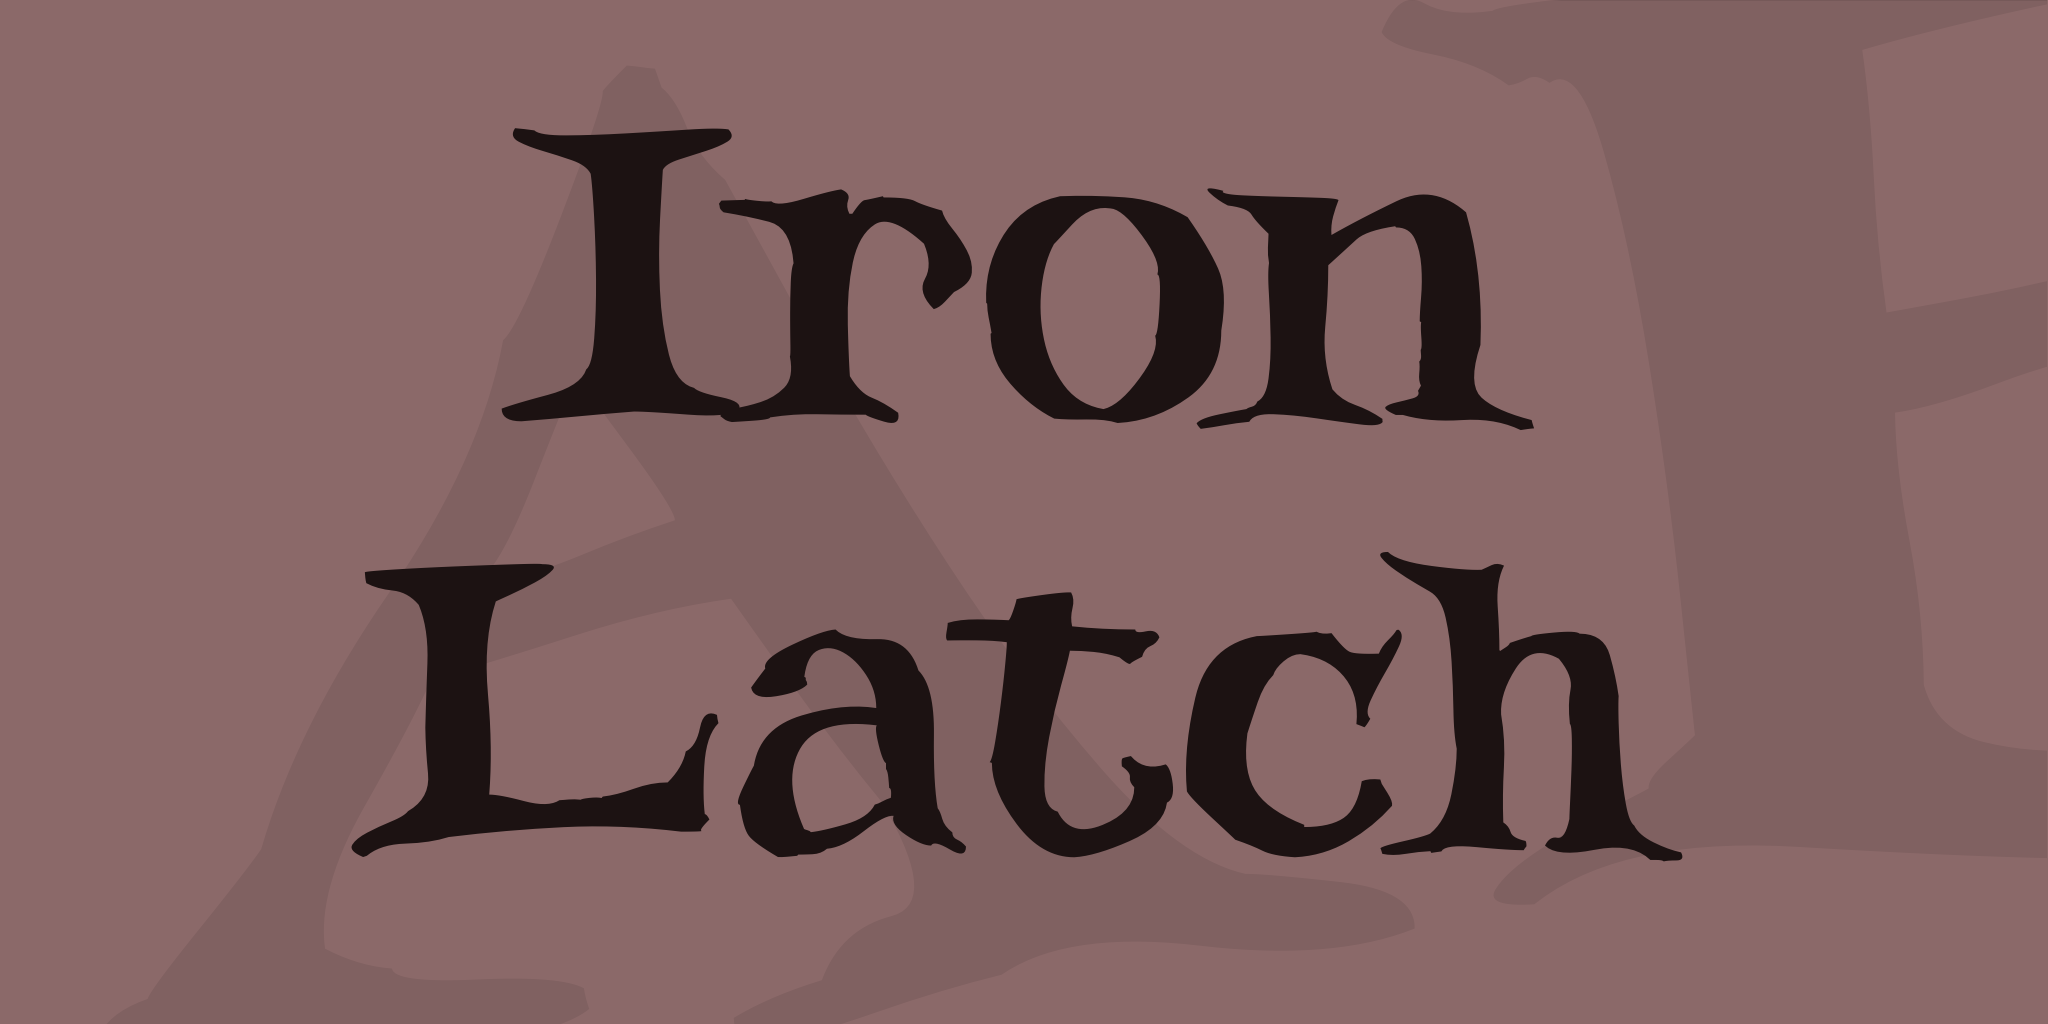 Iron Latch